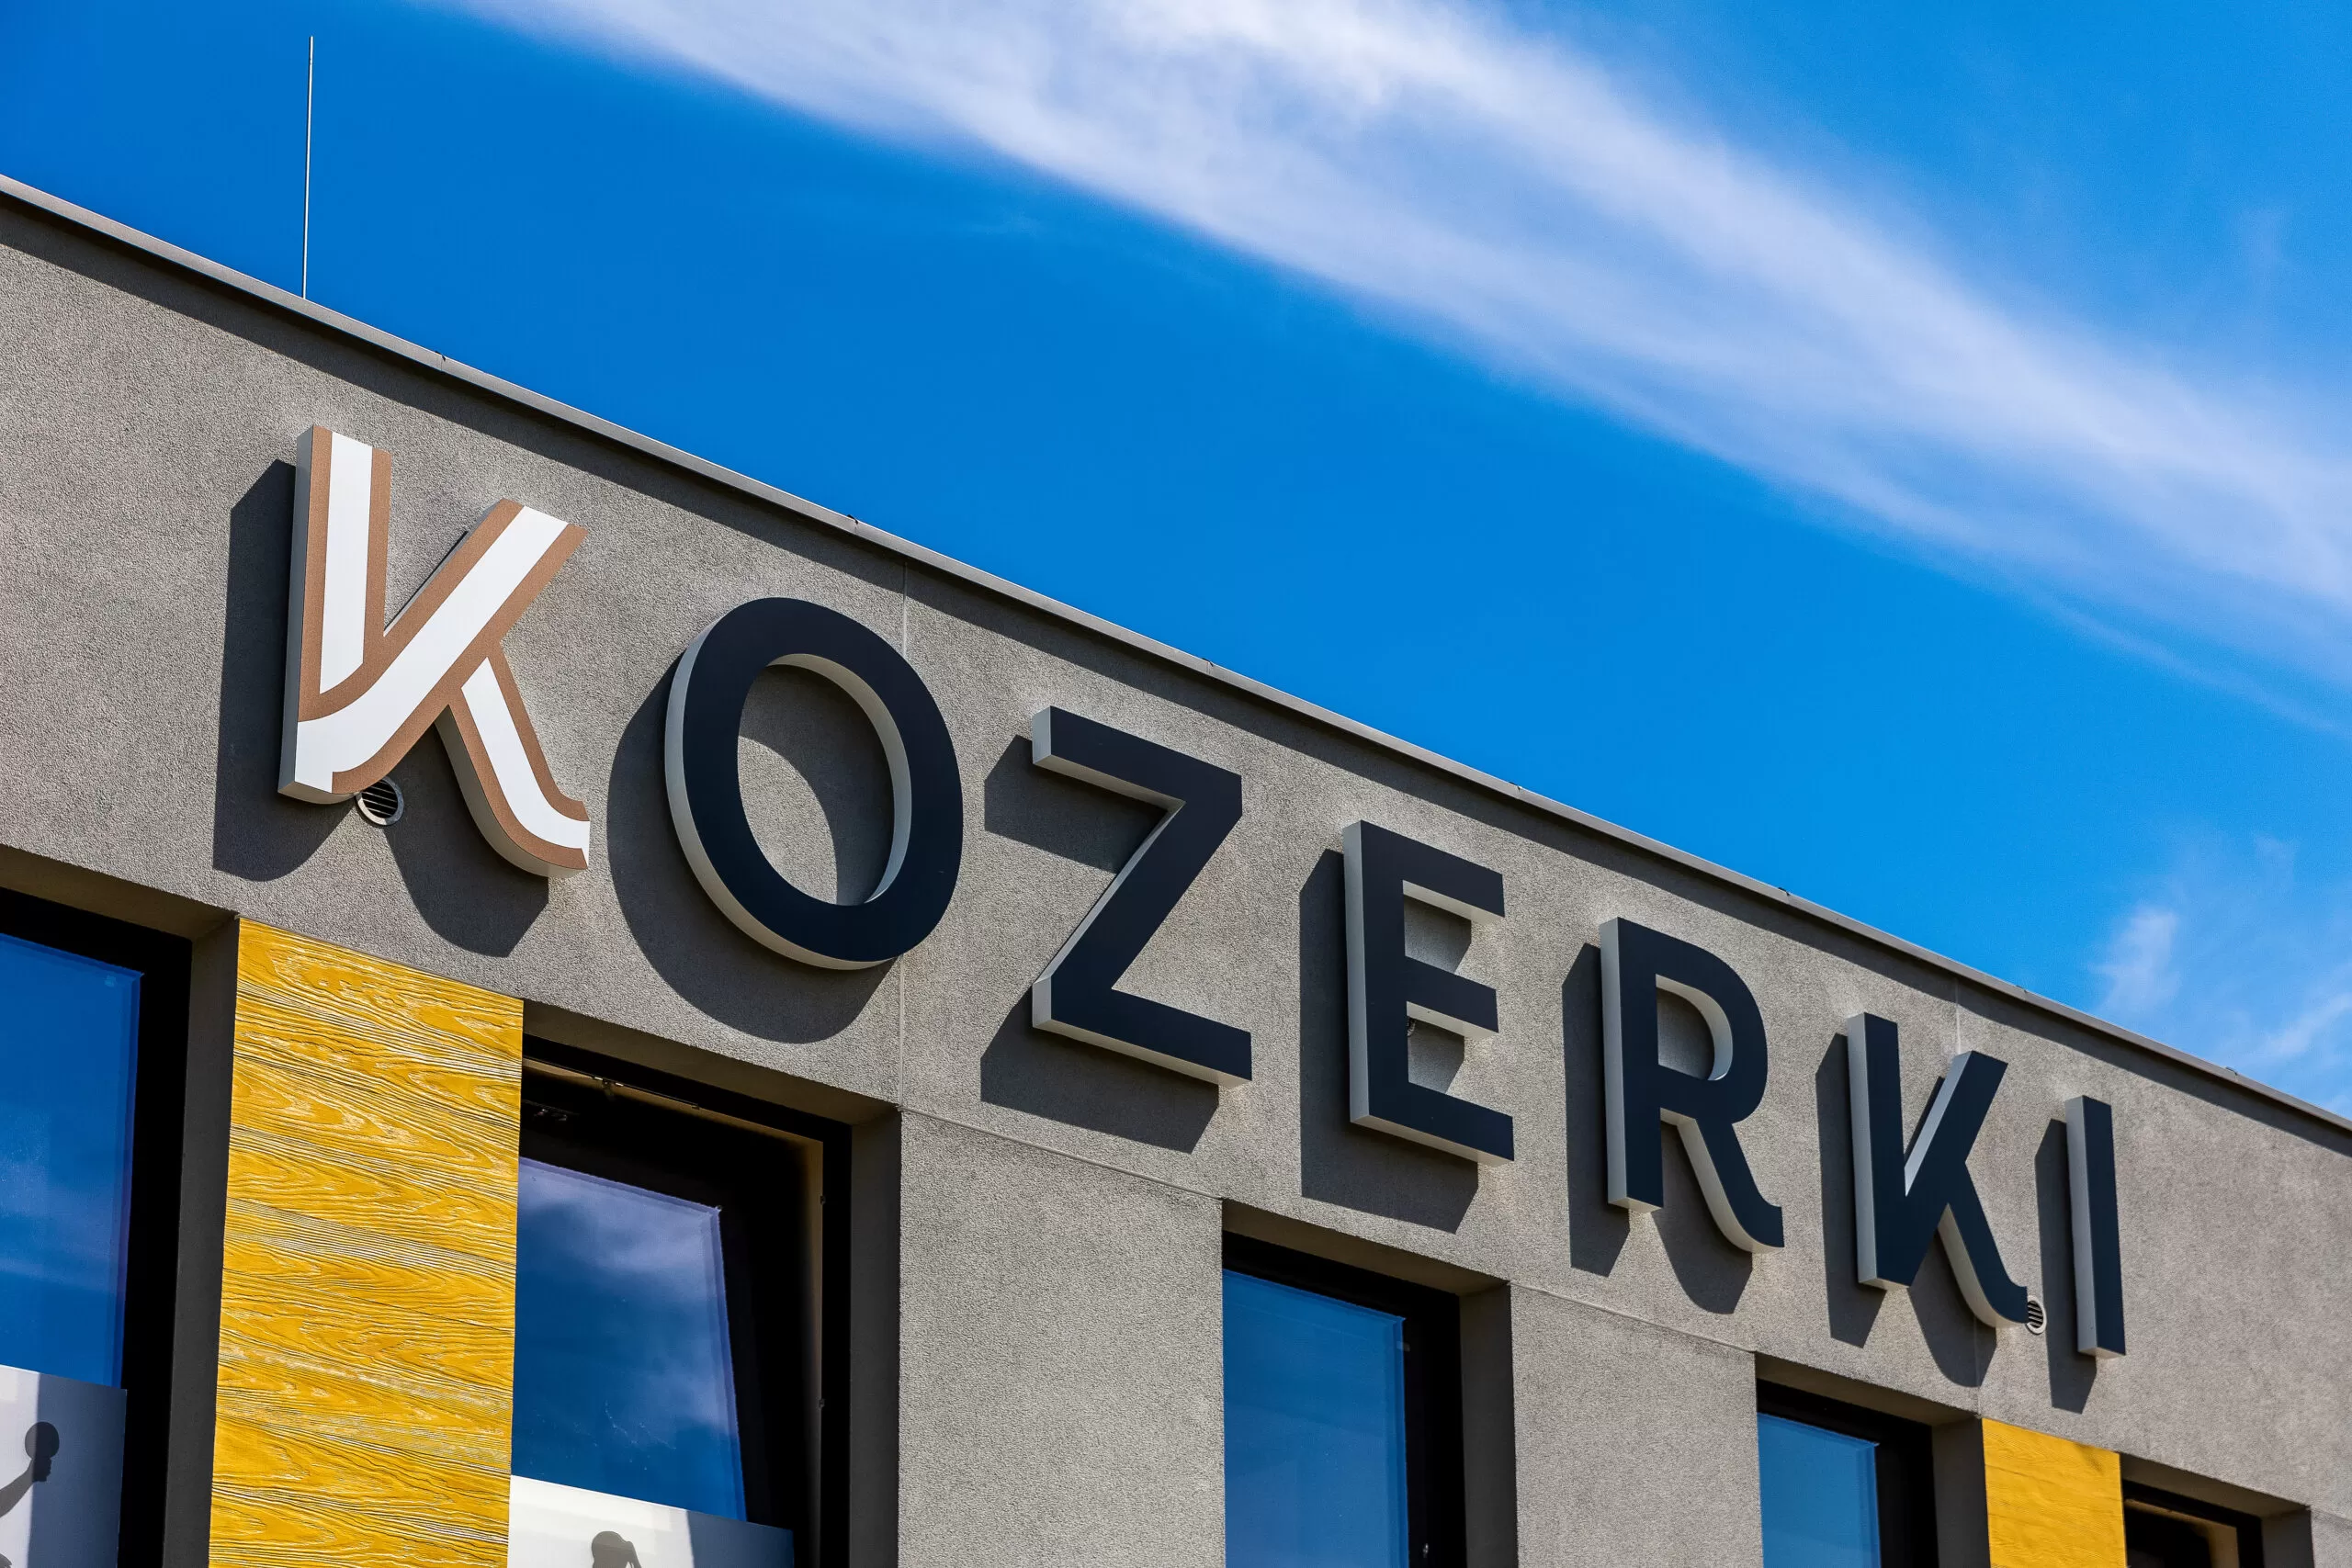 Jakie inne atrakcje oferuje okolica Hotelu Kozerki?